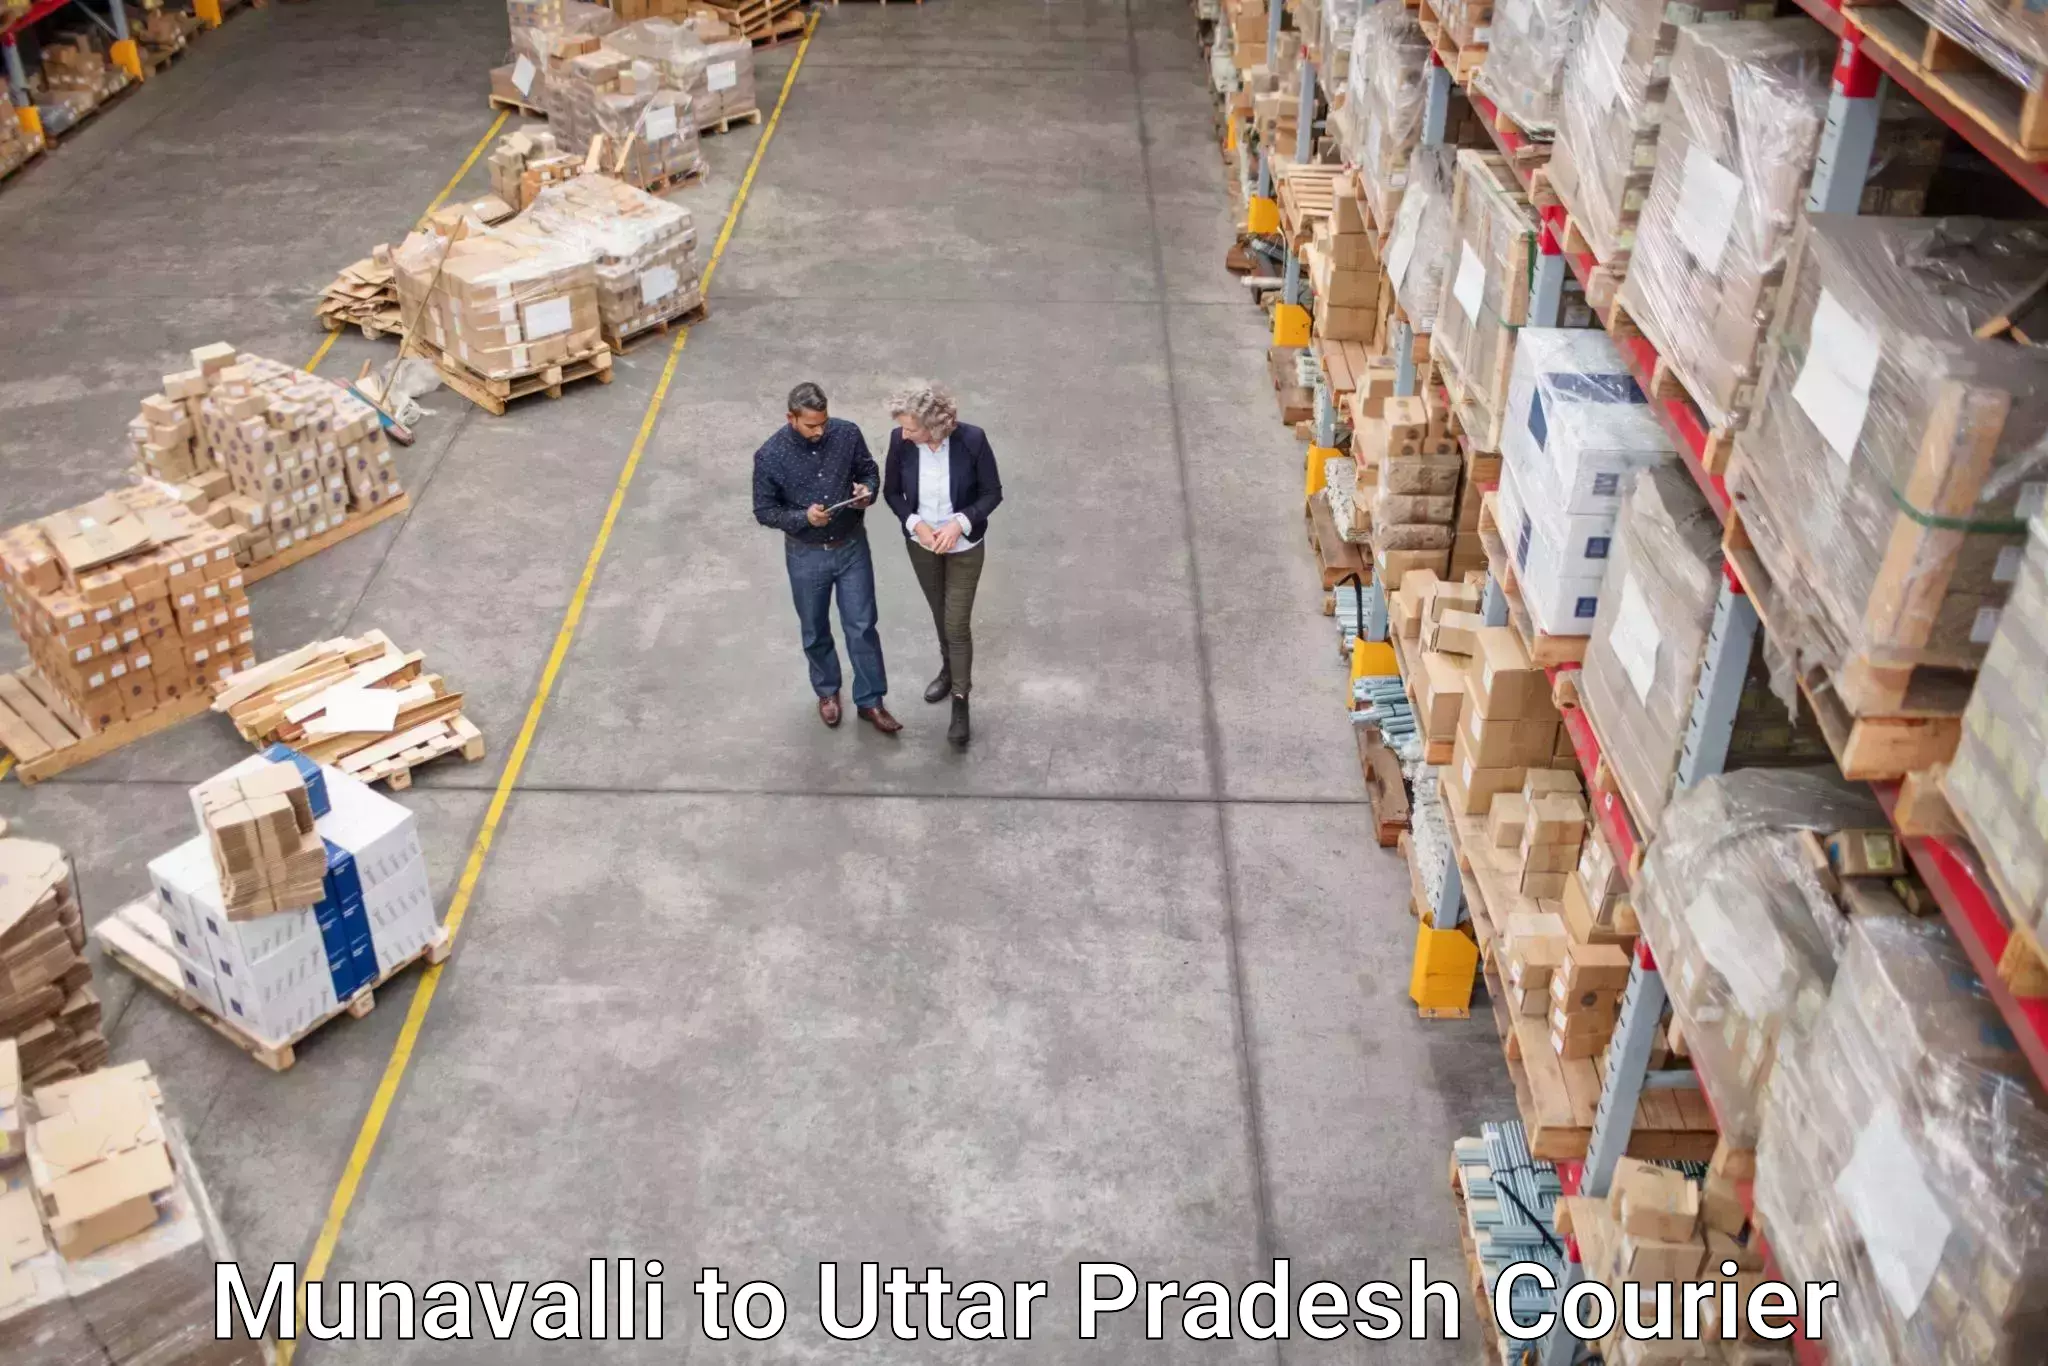 Multi-service courier options Munavalli to Nariwari